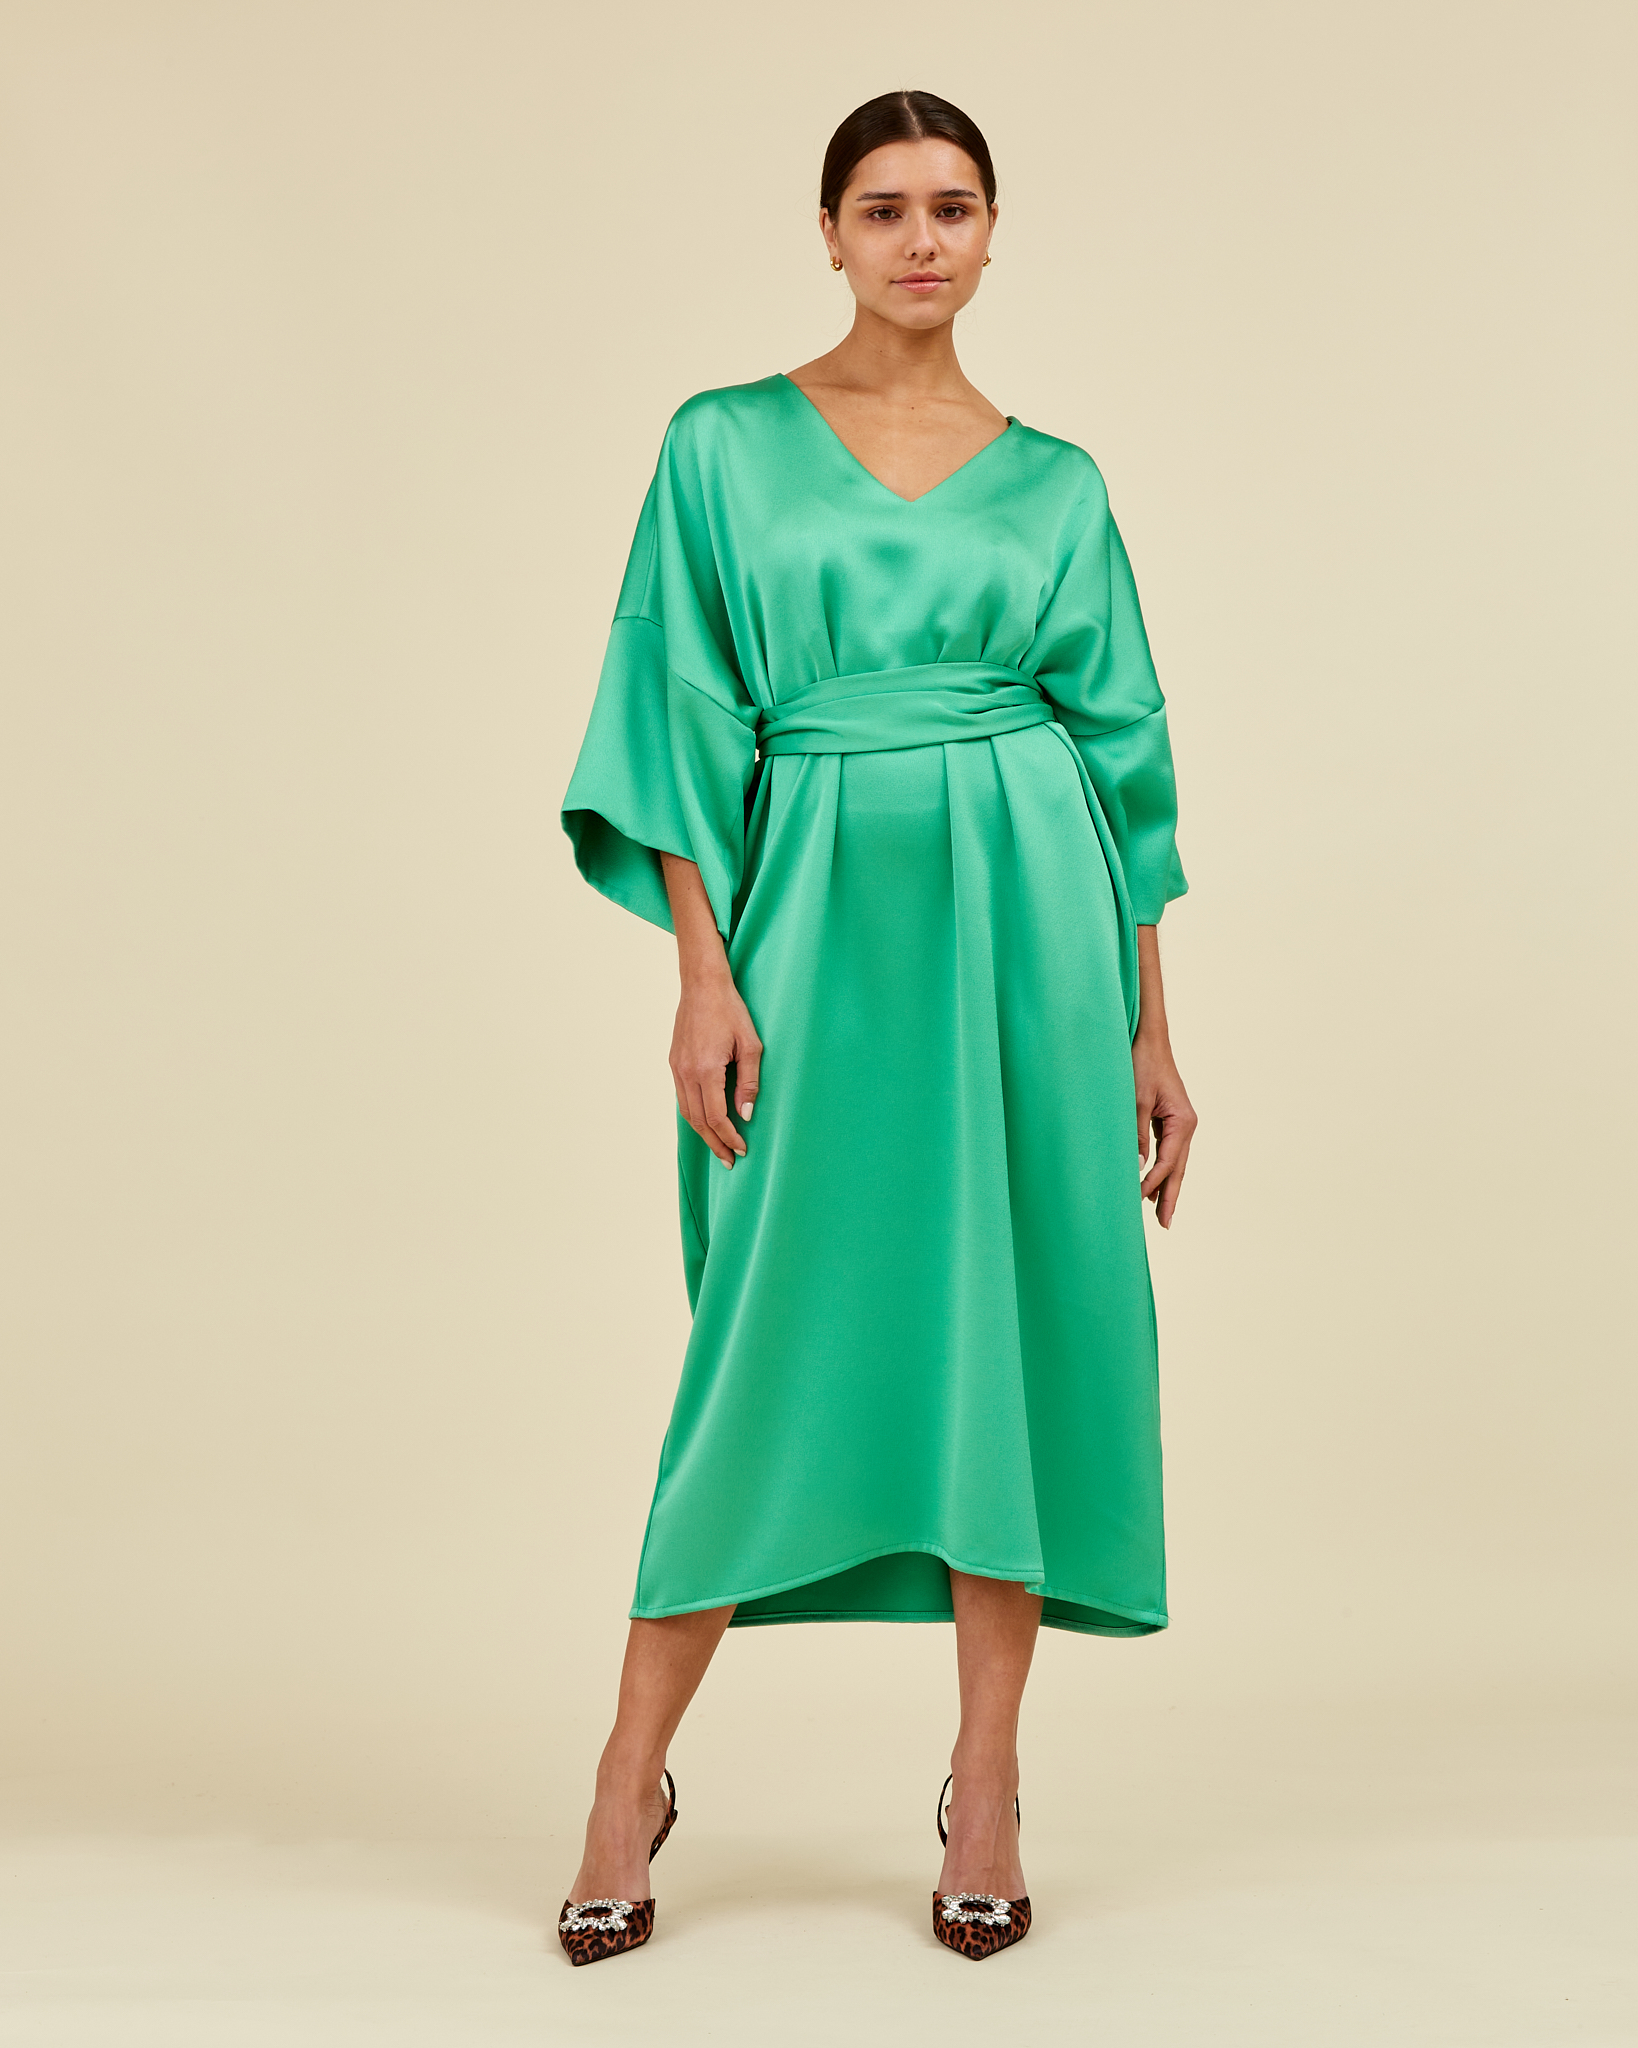 https://www.seamehappy.be/wp-content/uploads/2022/08/Sea-Me-Happy-Paloma-Dress-Long-spearmint-green-frint2.jpg